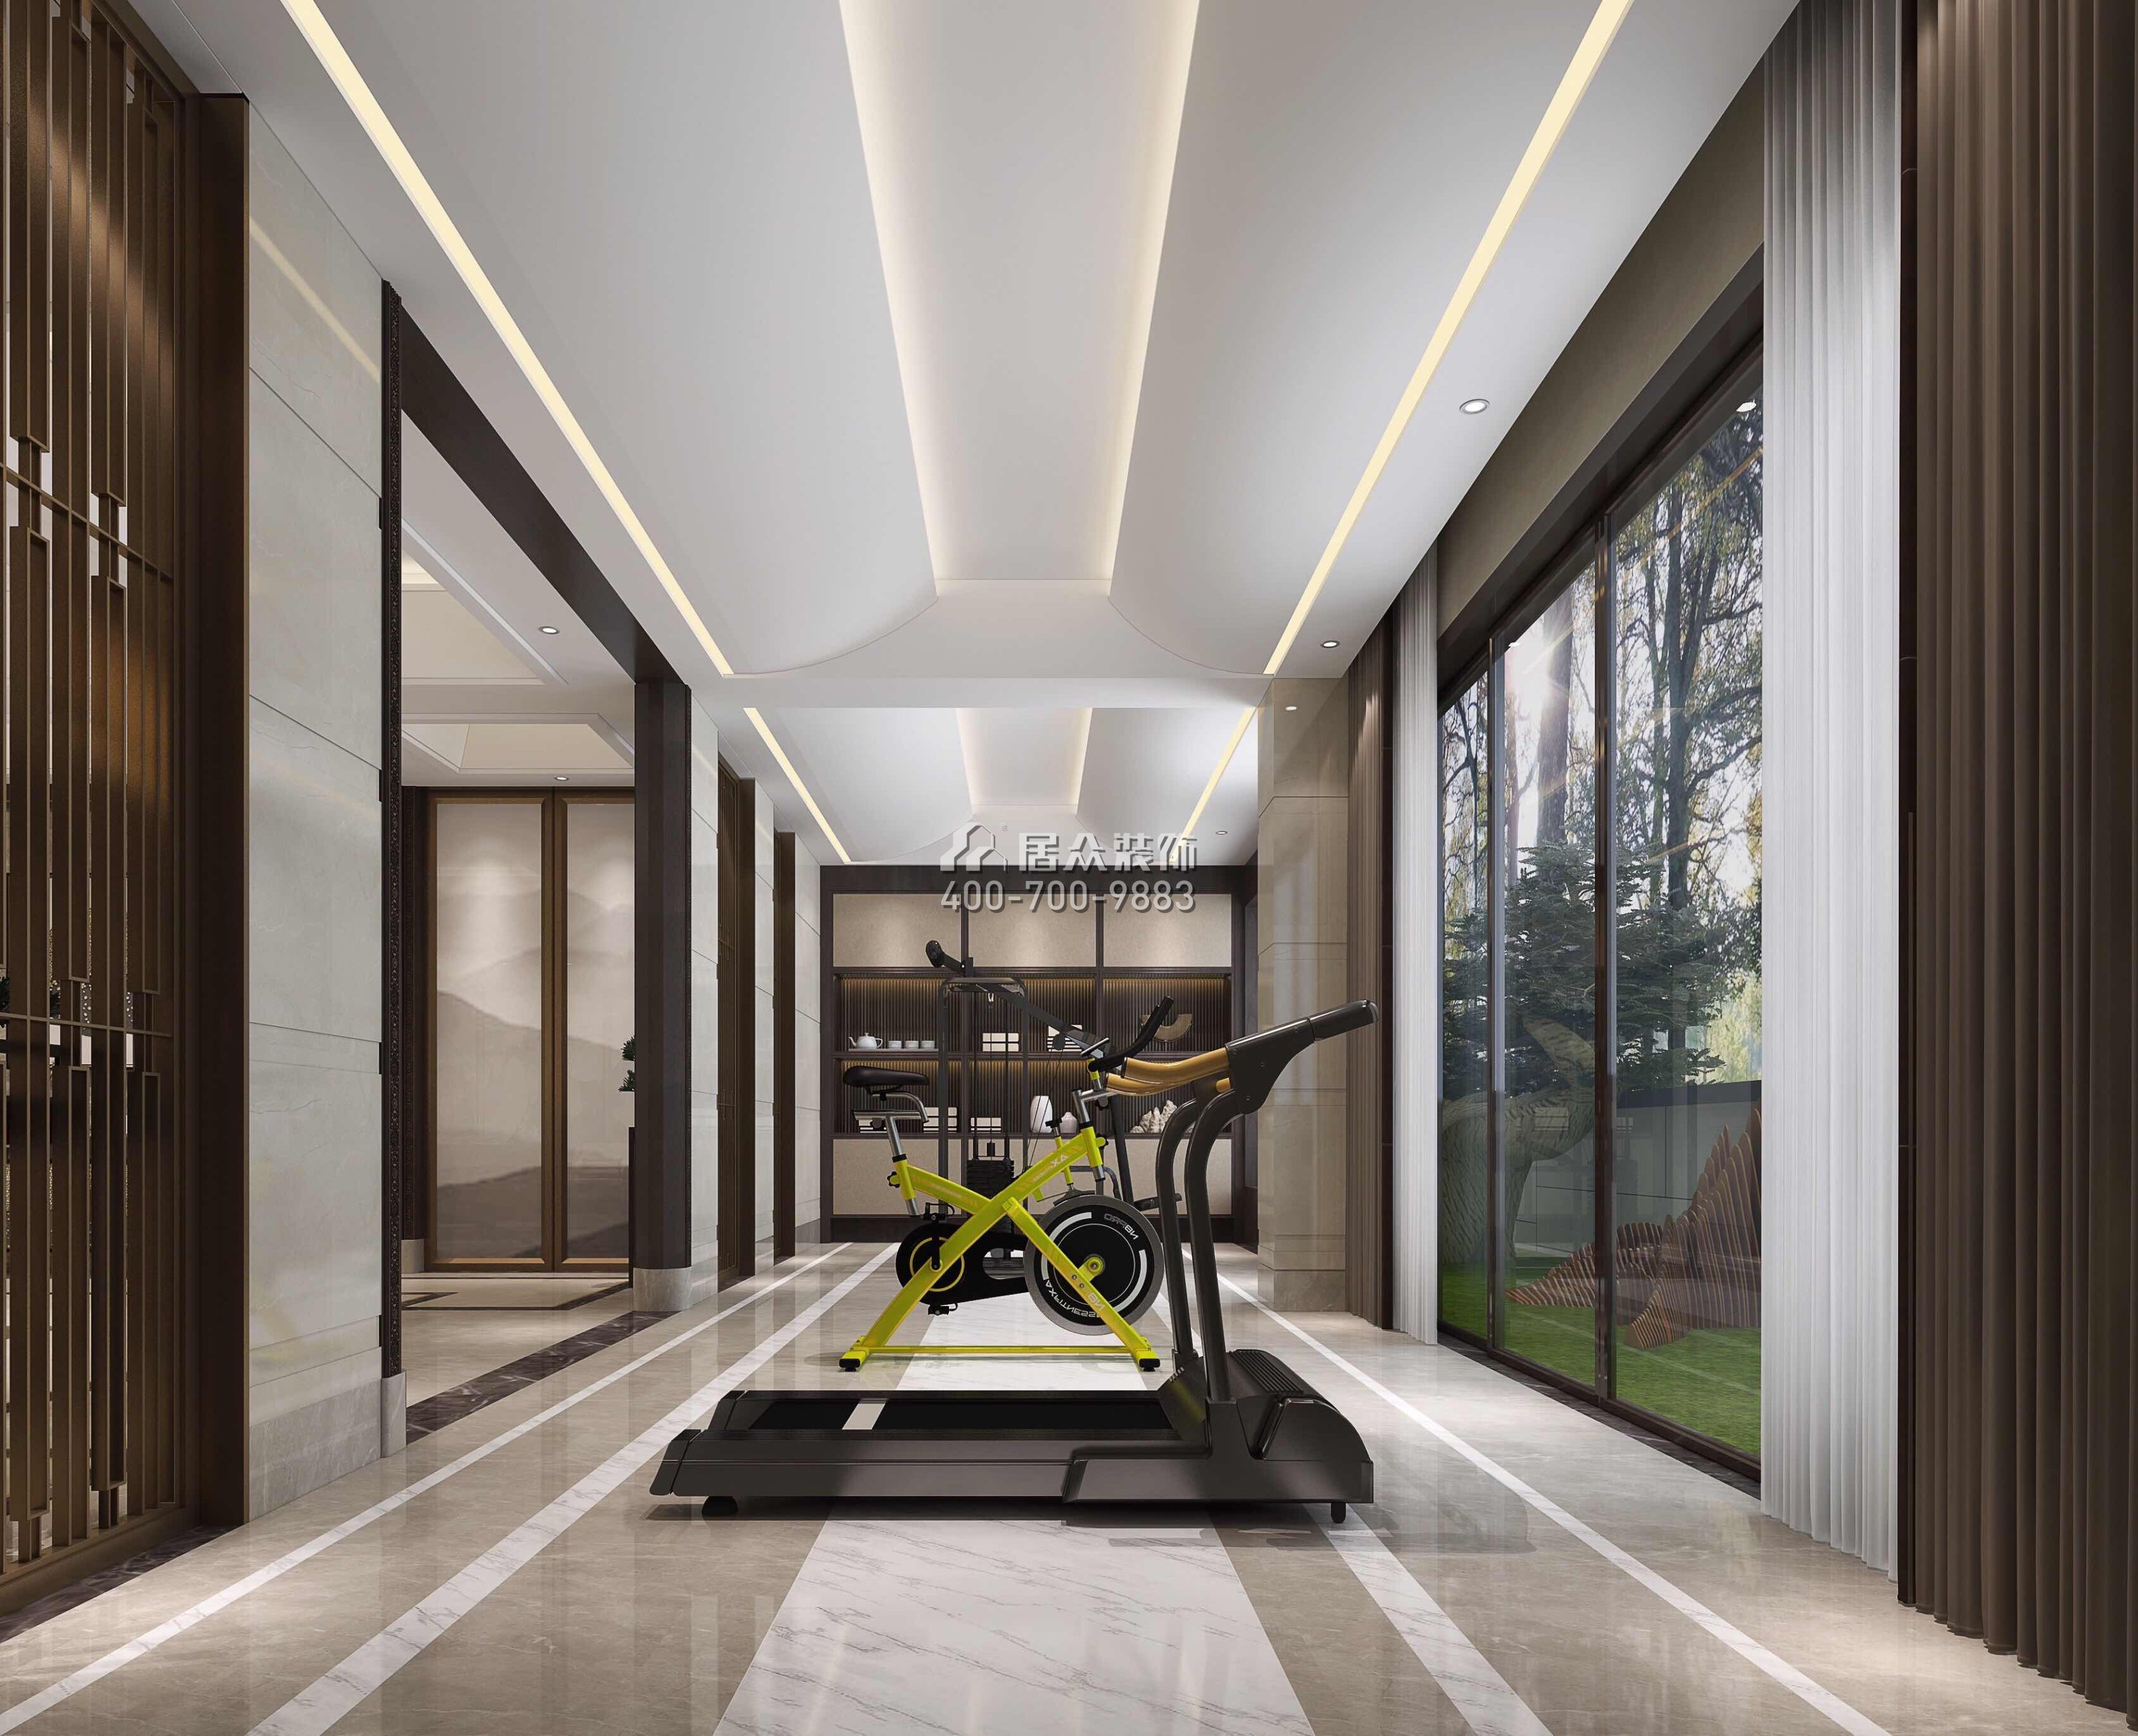 江畔豪庭500平方米中式风格别墅户型家庭健身房装修效果图